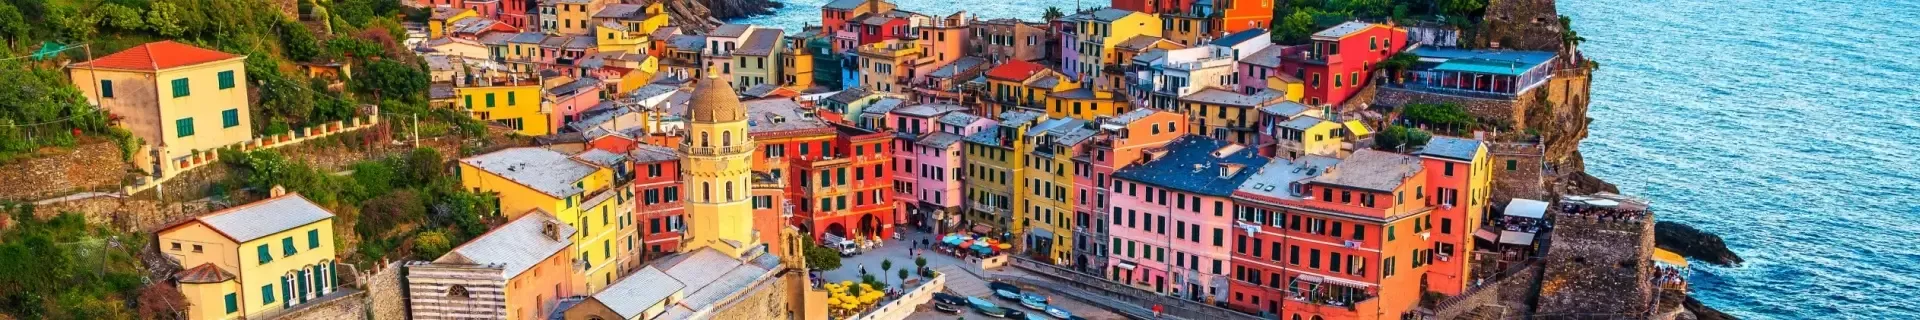 Italie Cinque Terre